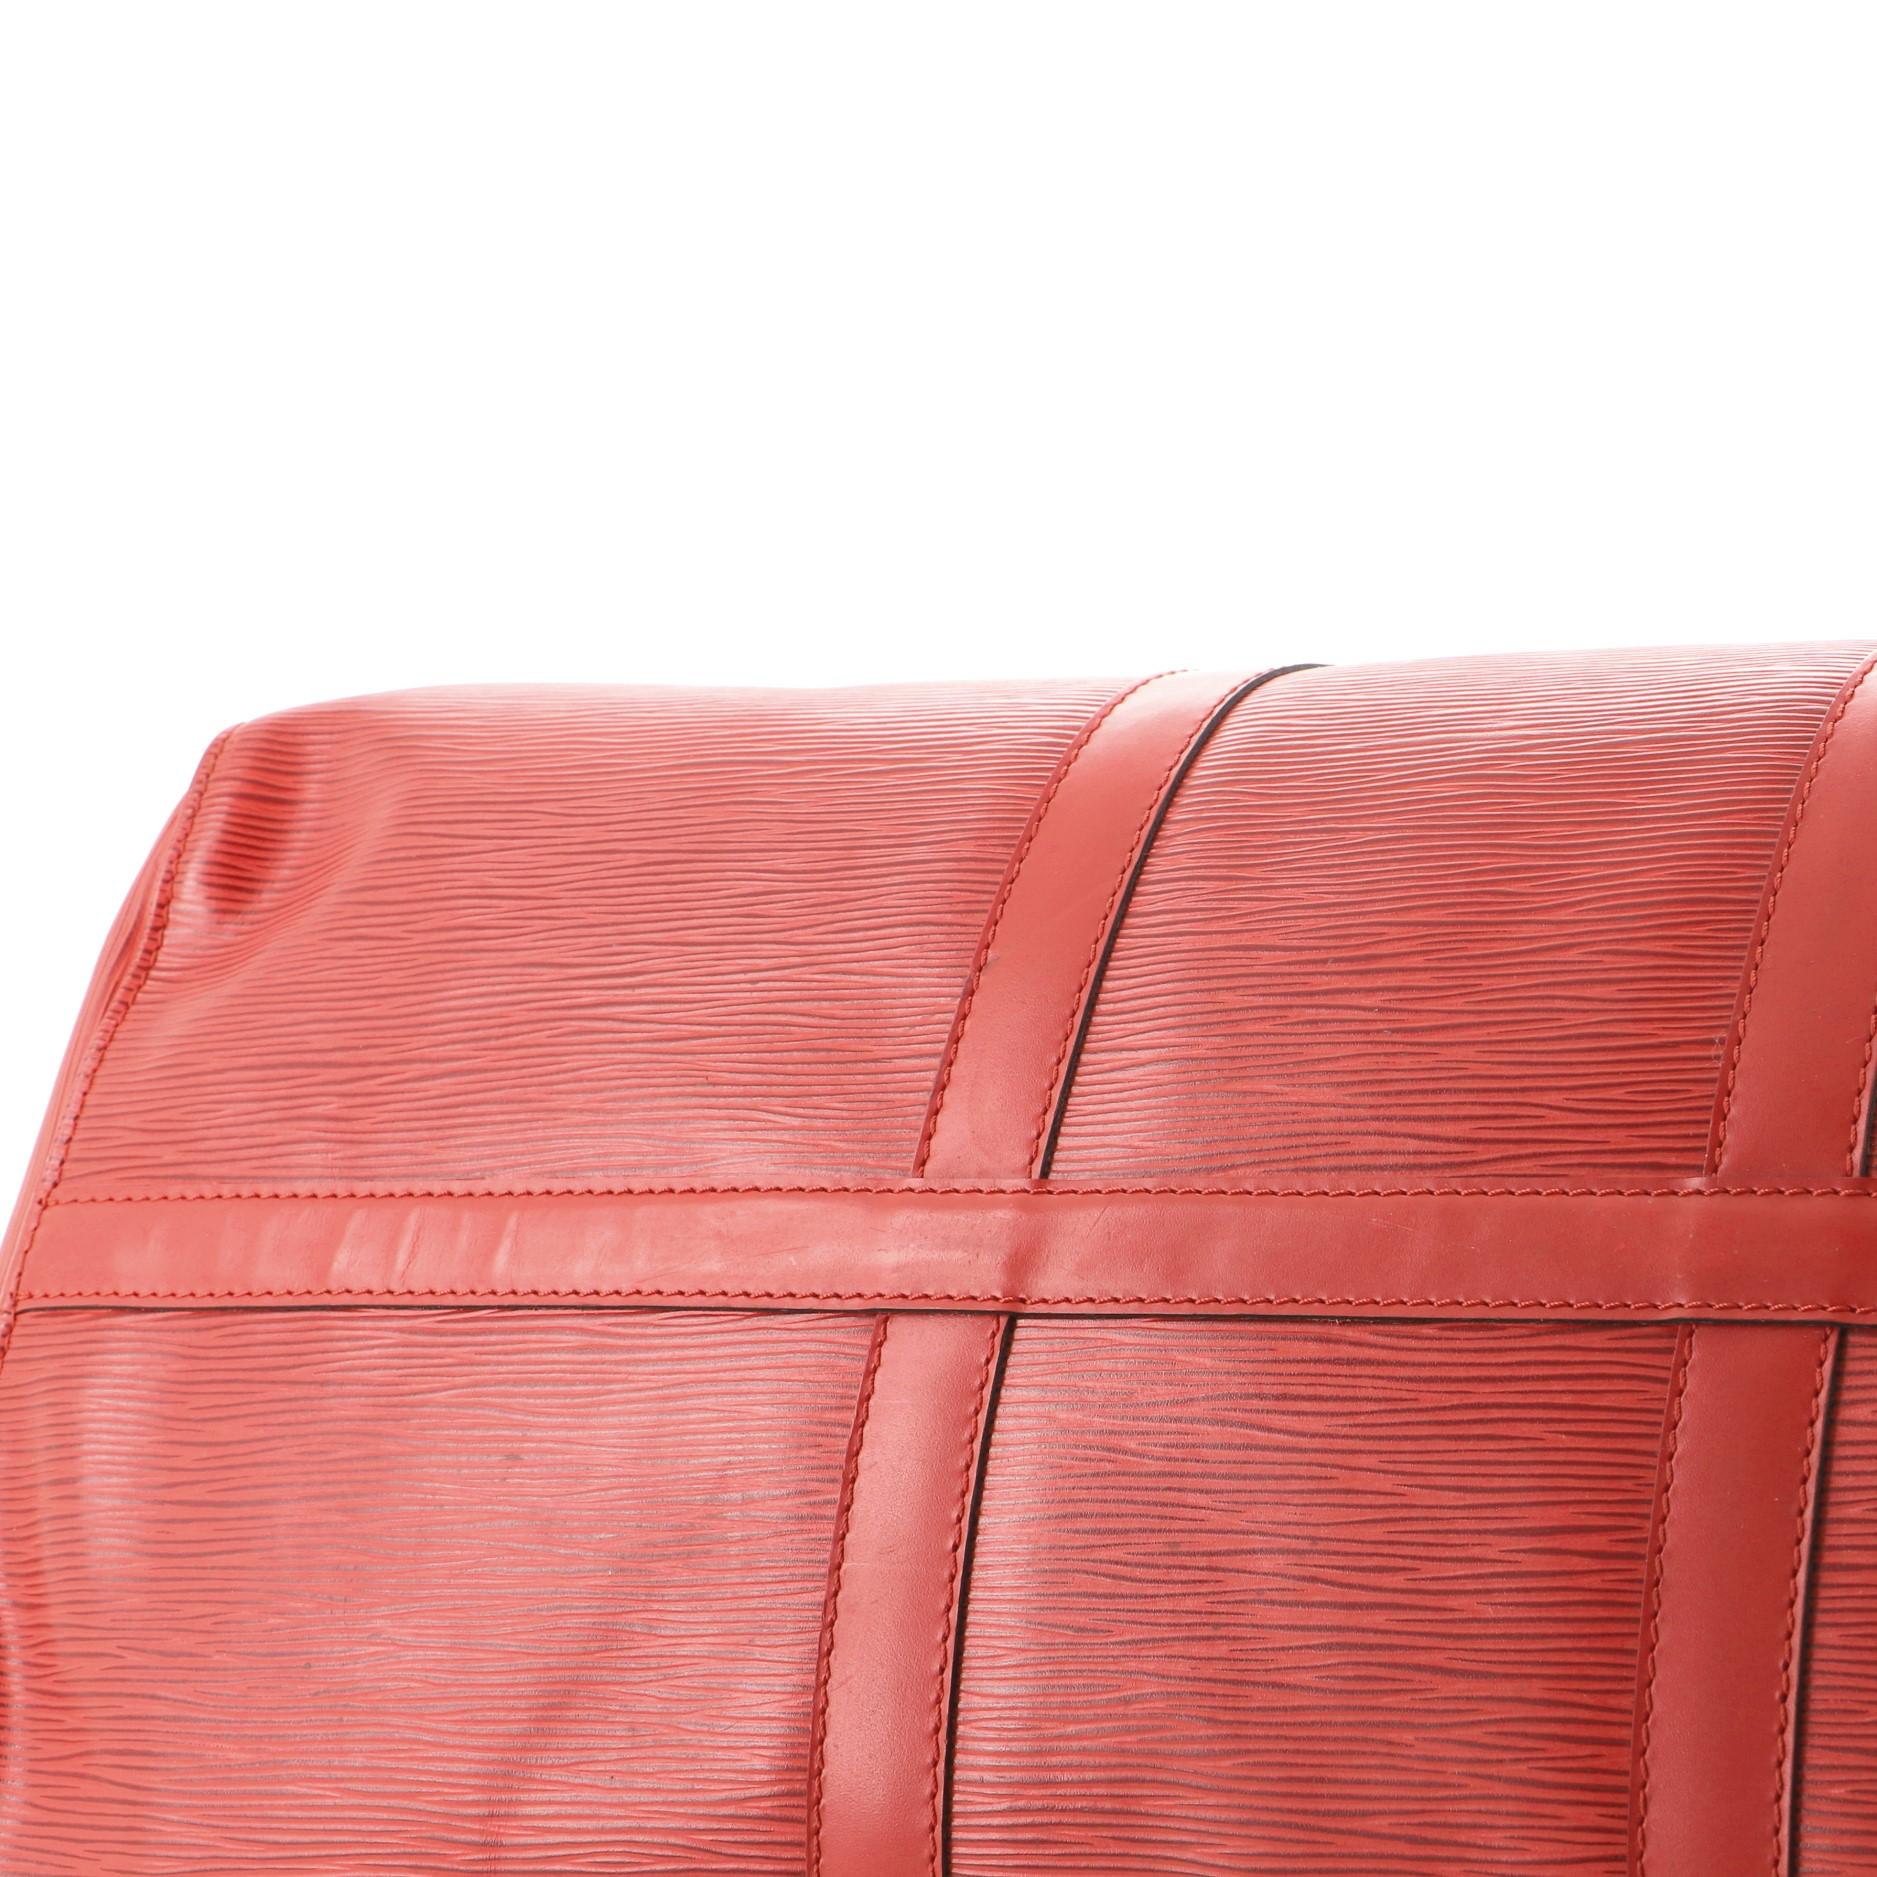 Louis Vuitton Keepall Bag Epi Leather 50 1